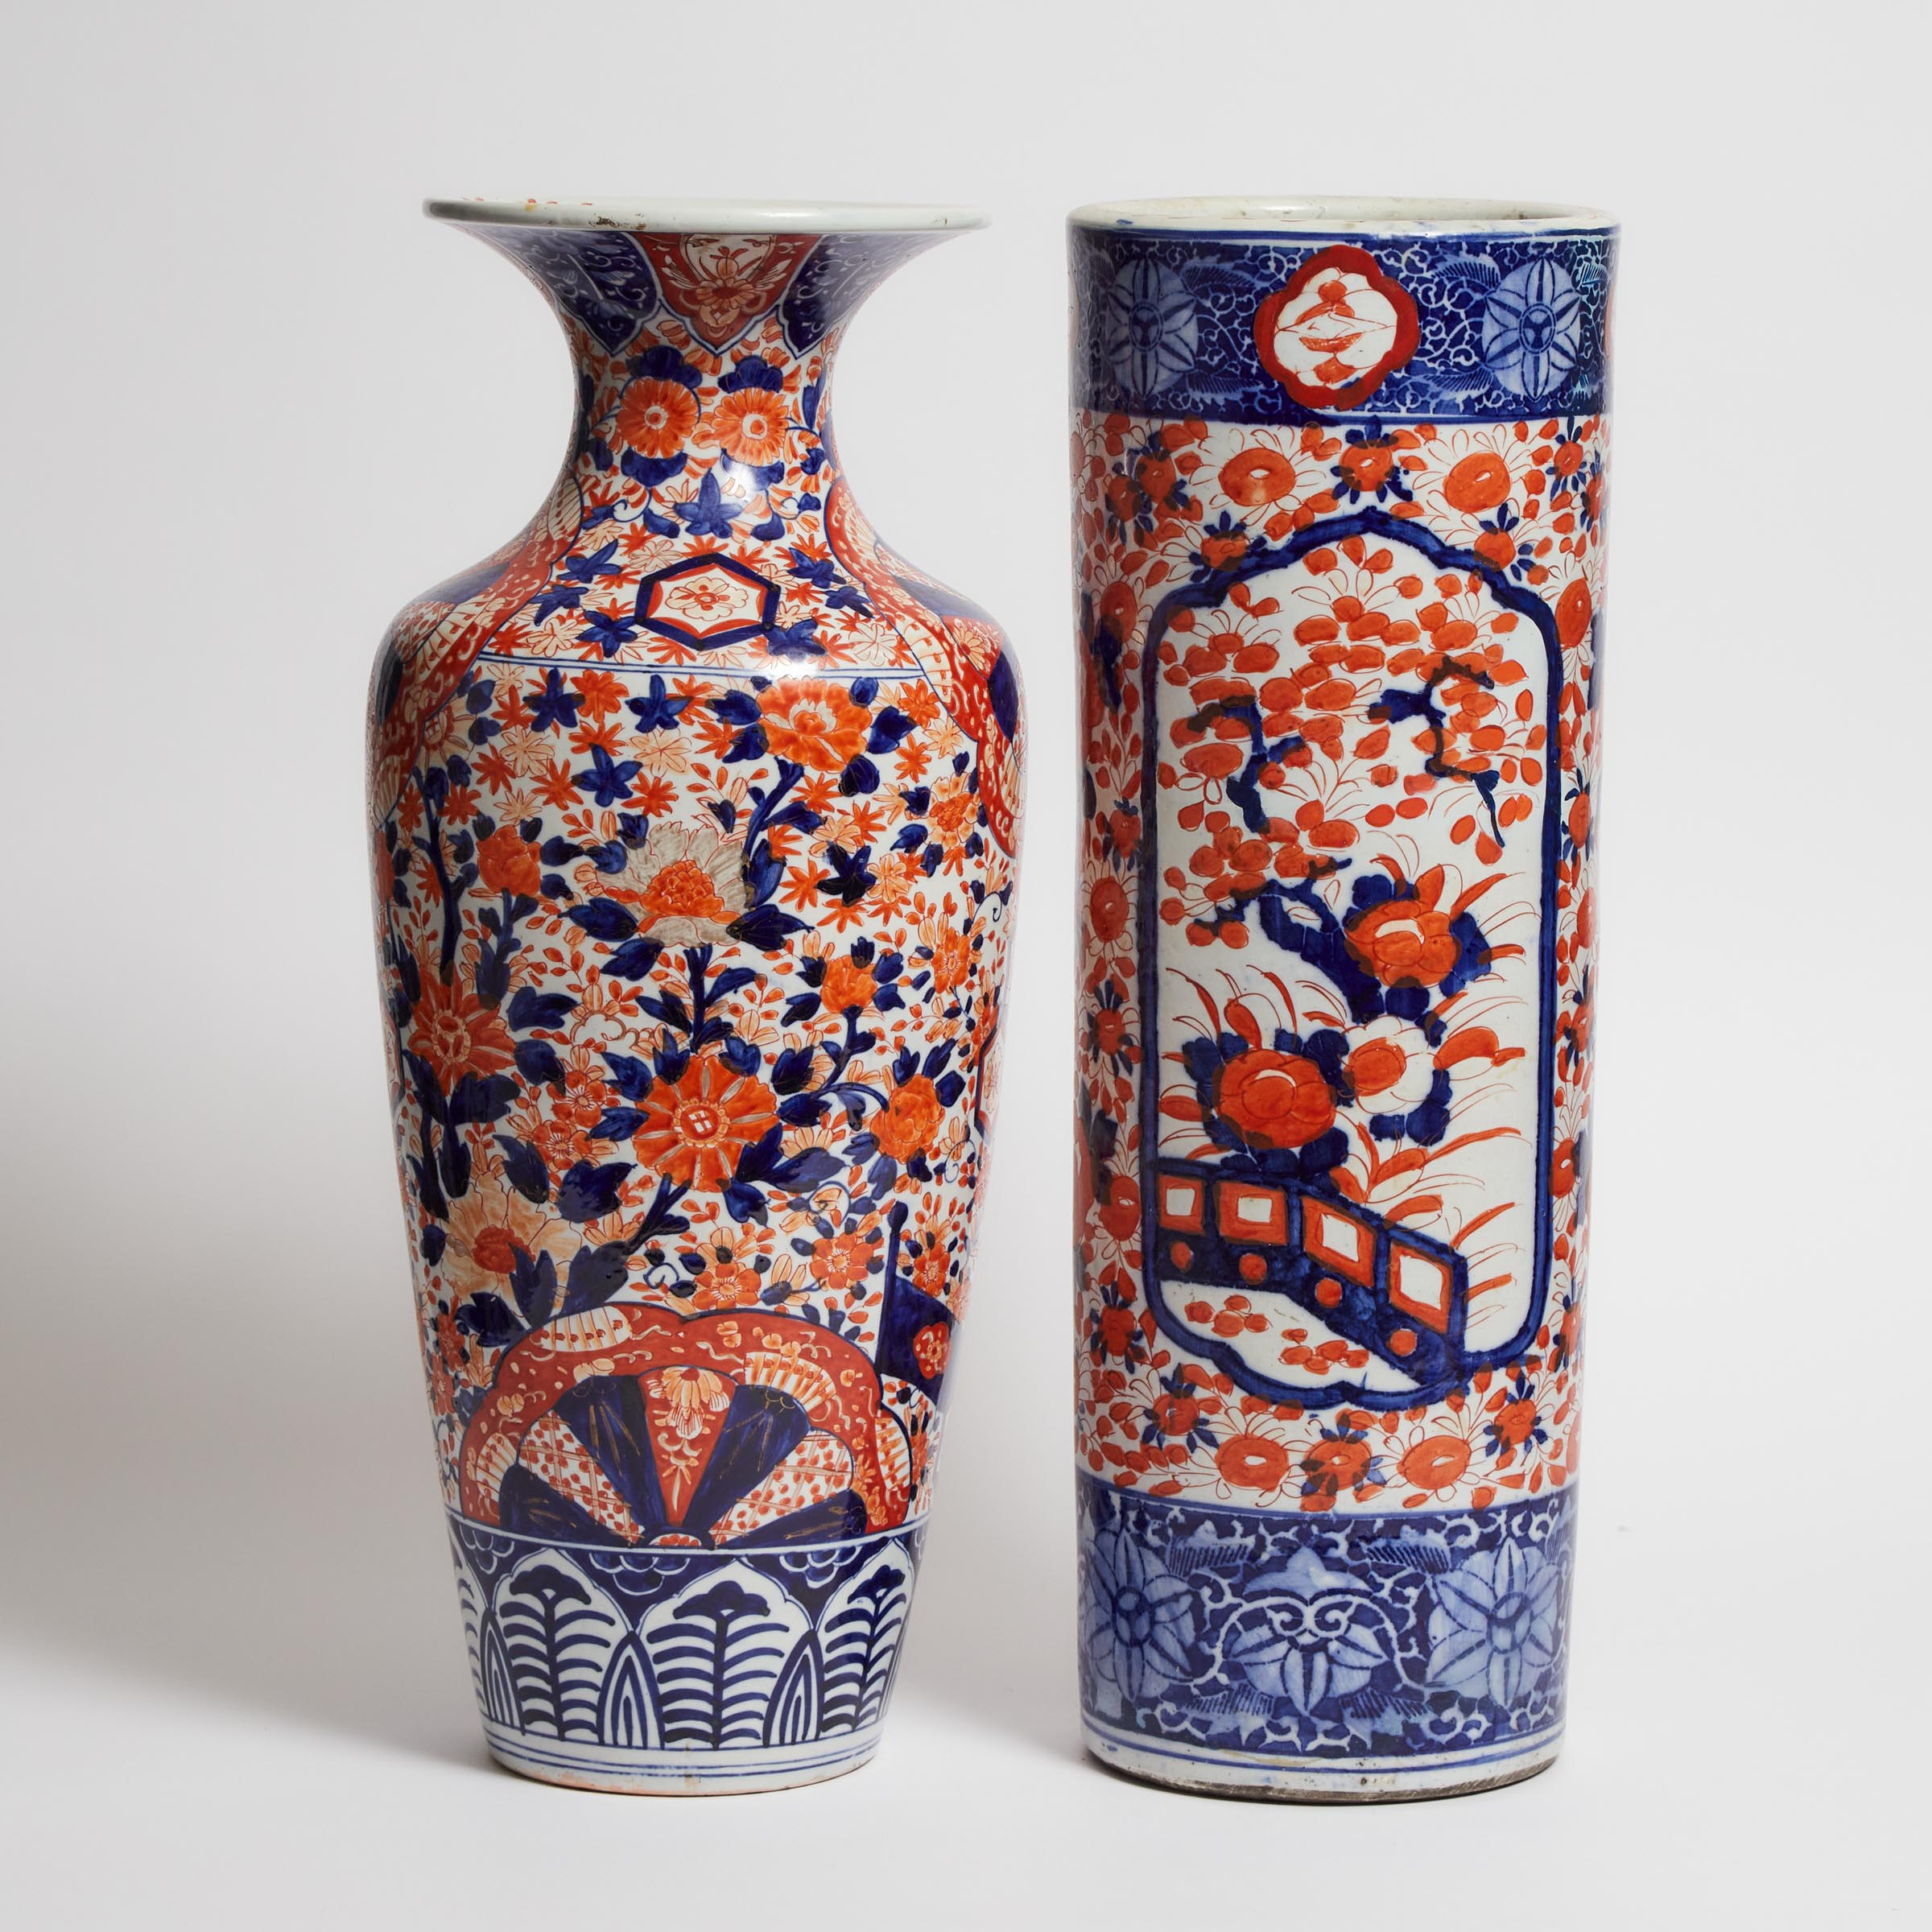 A Large Imari Porcelain Vase Together 3aad28